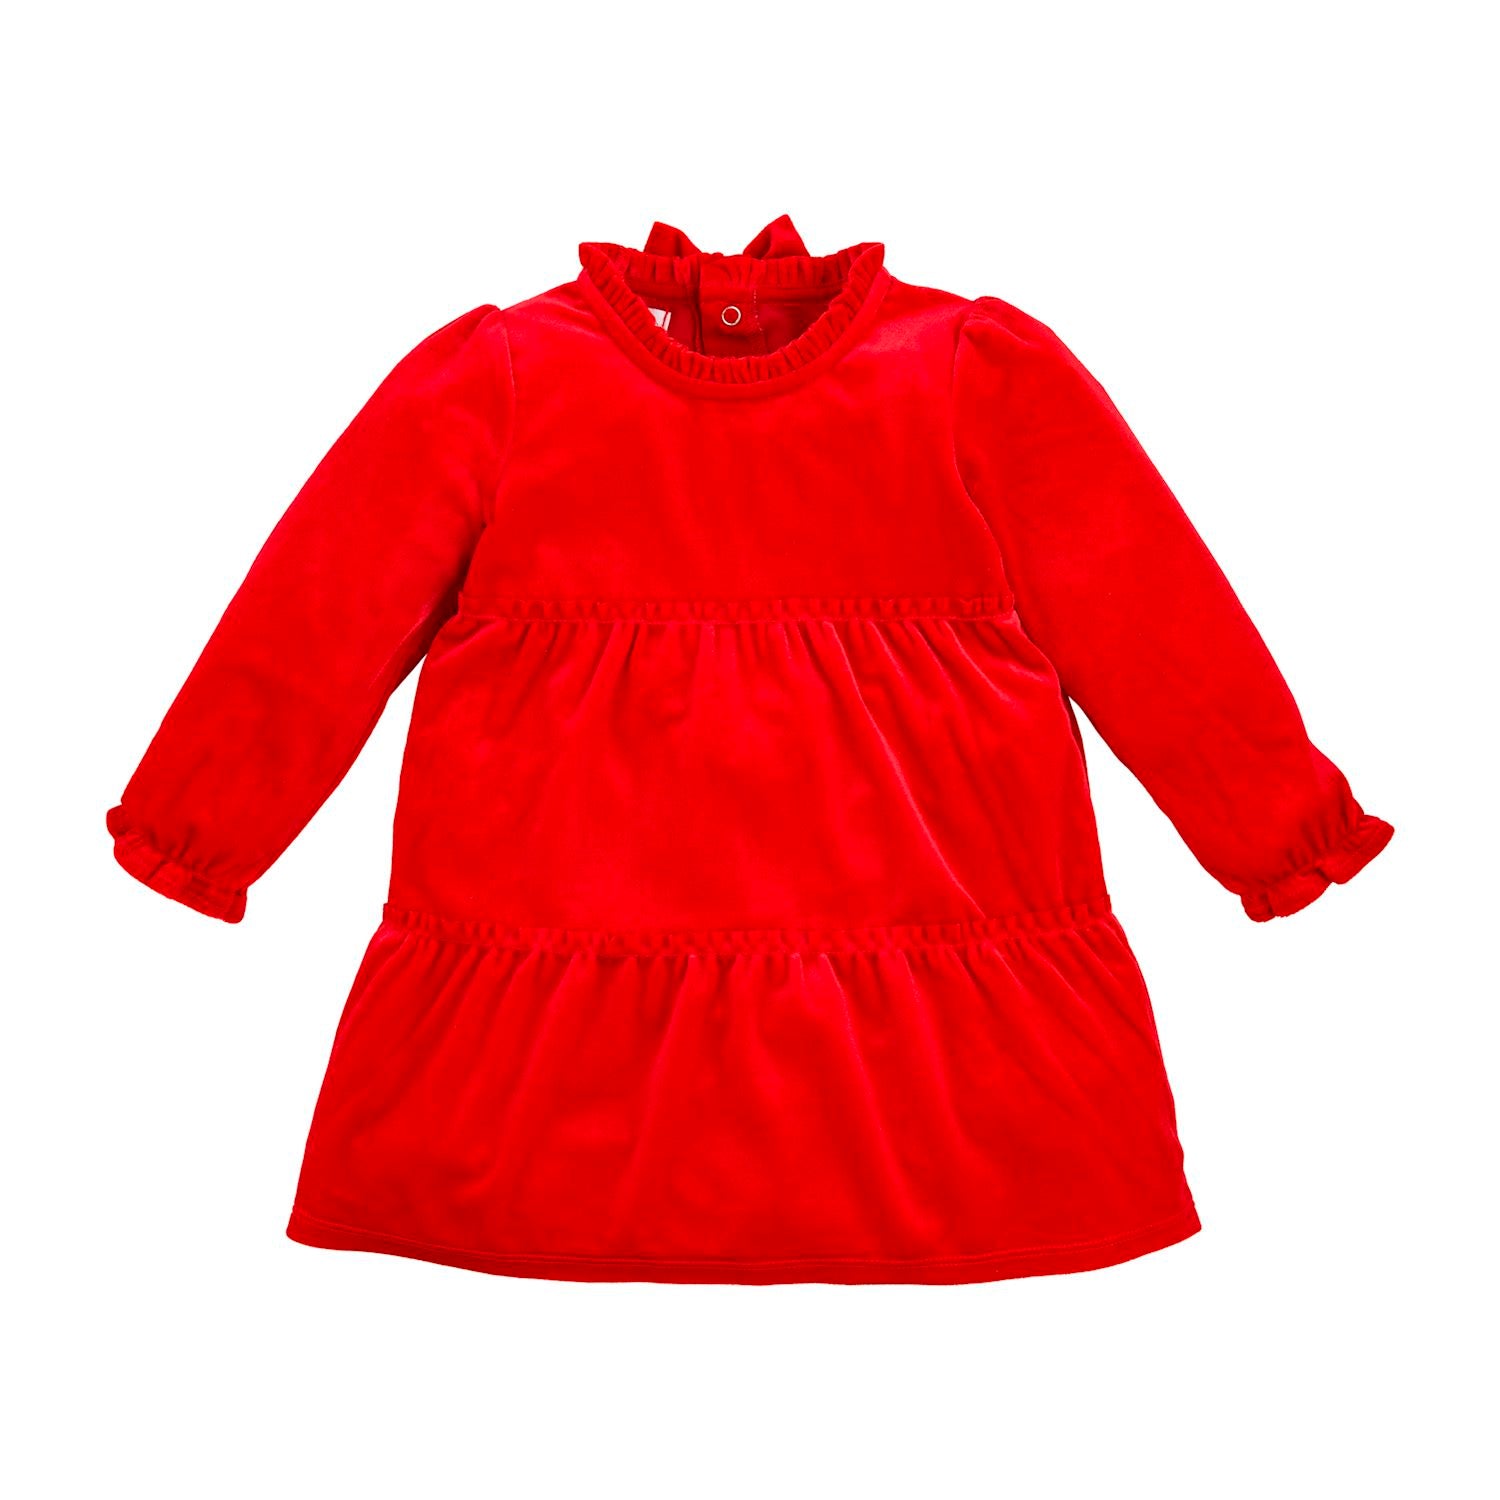 Mudpie- Red Velvet Bow Dress #15000258